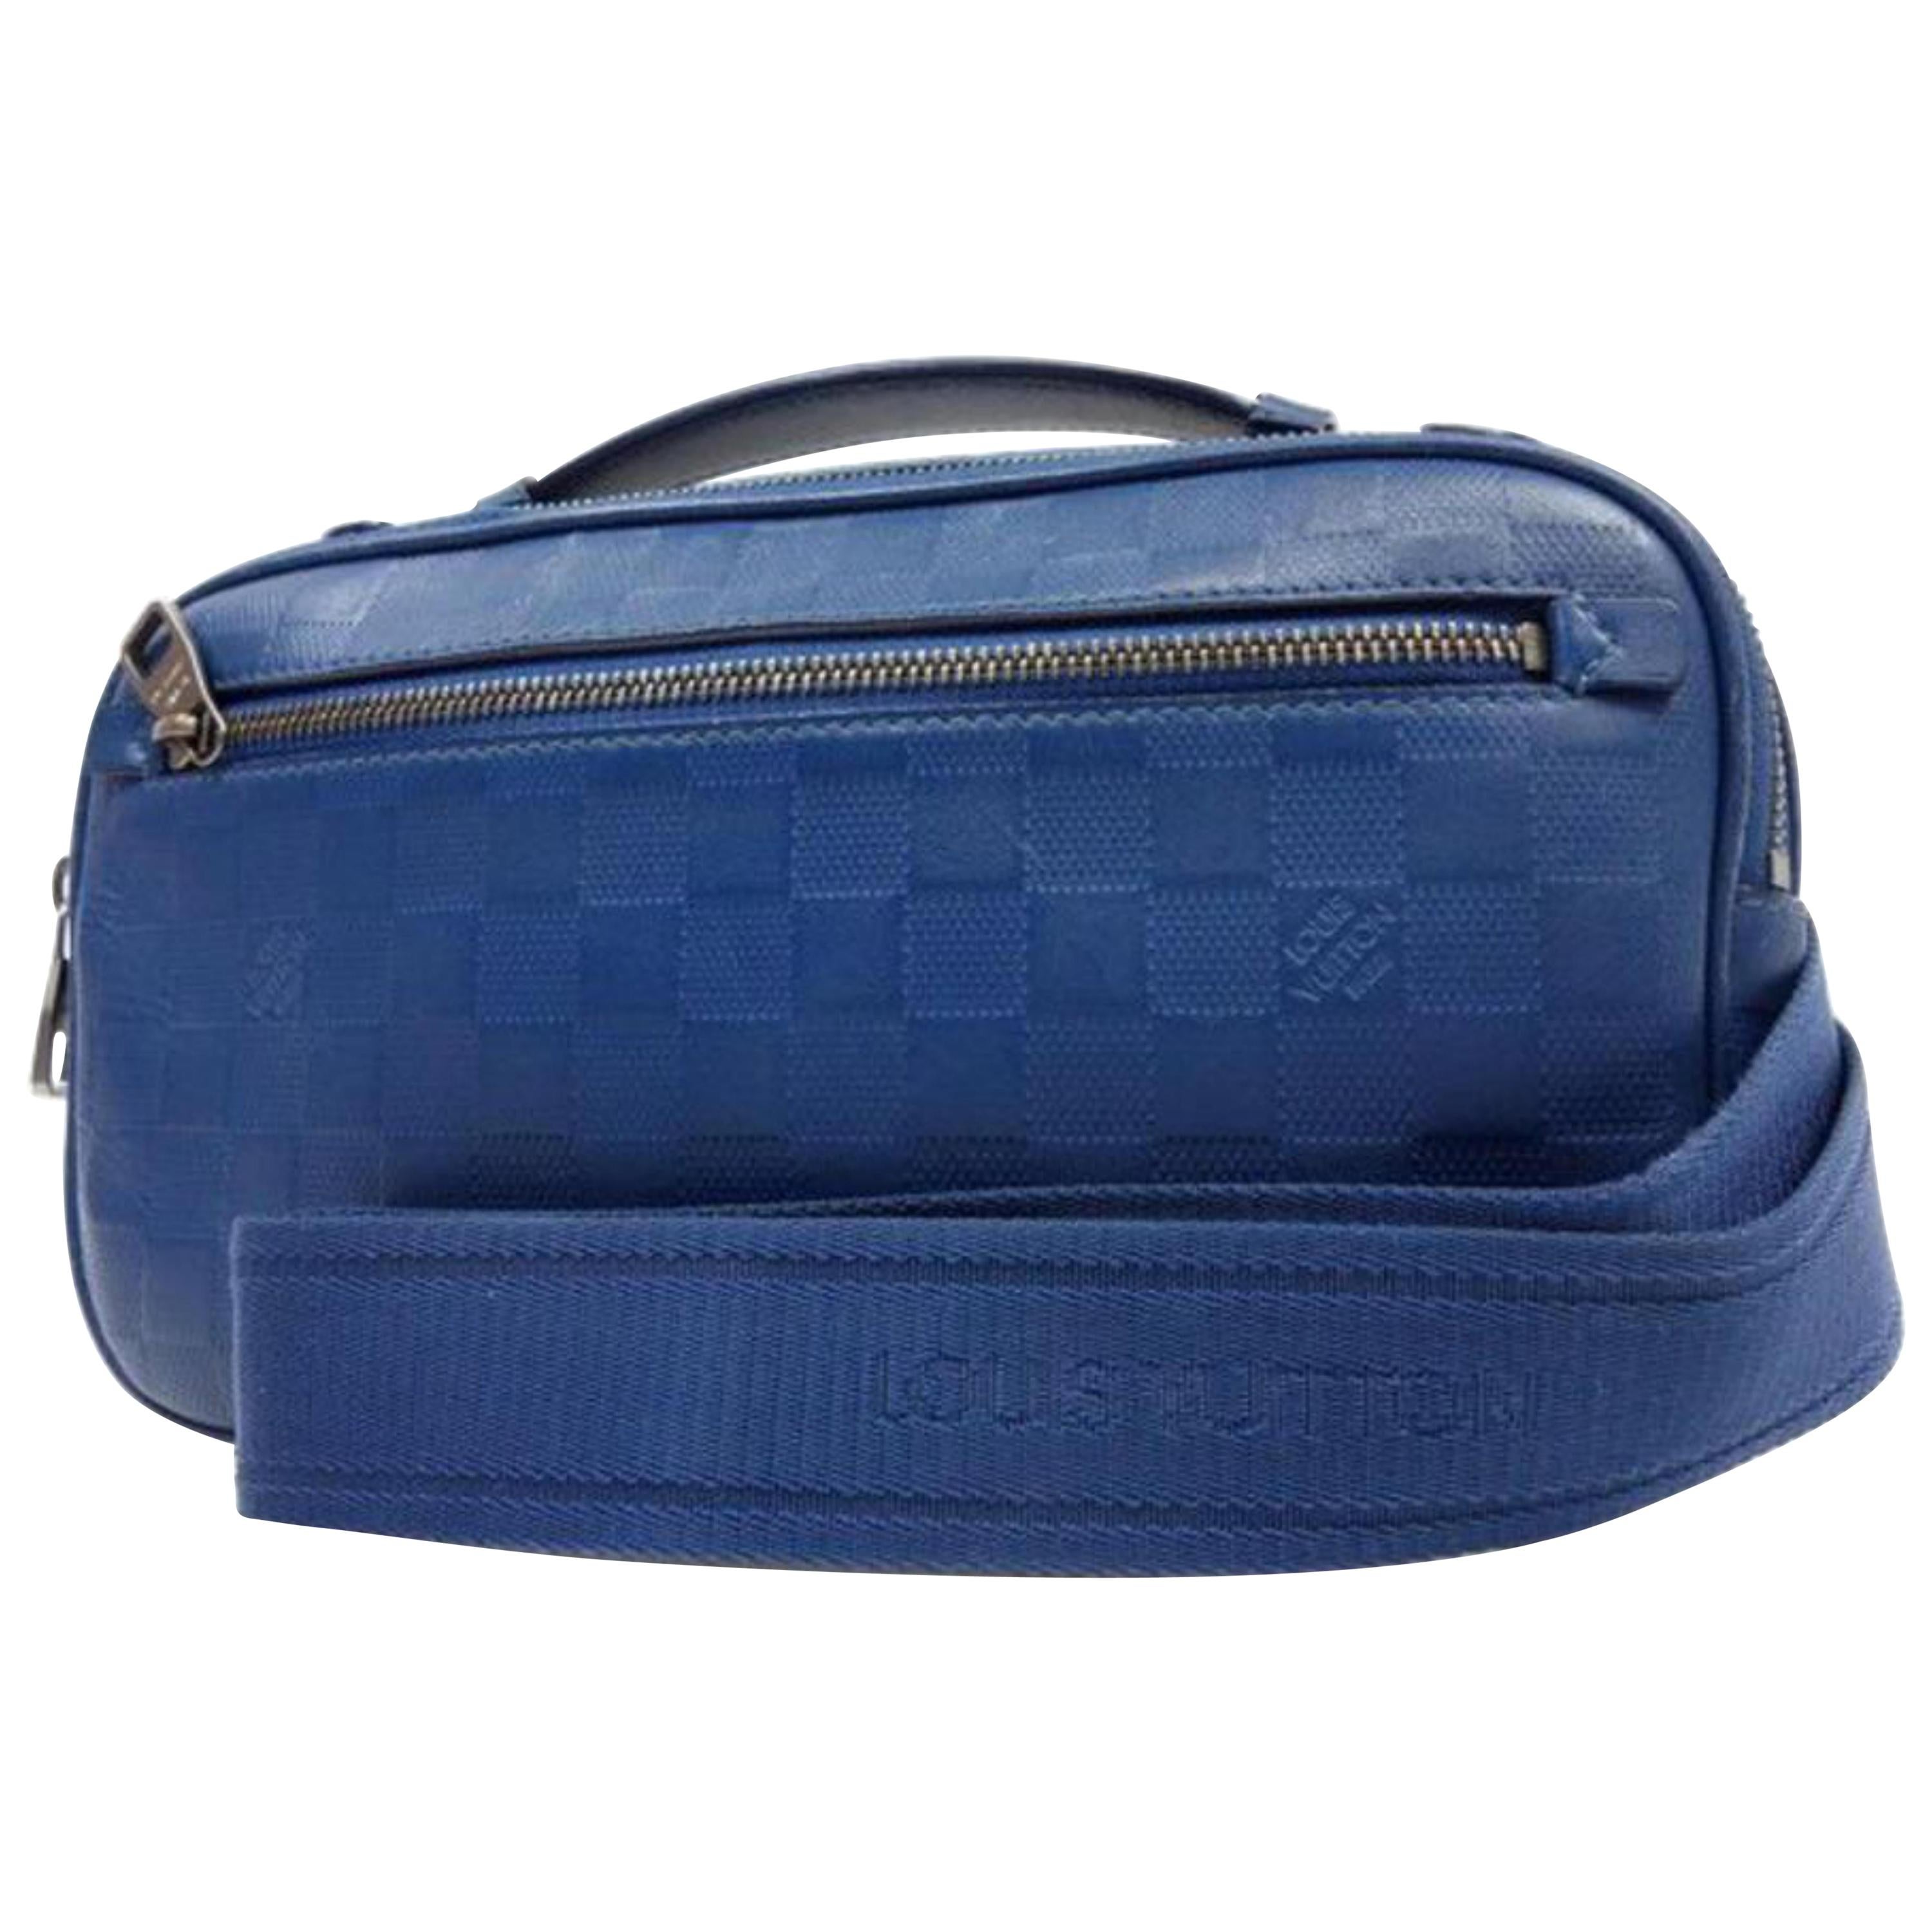 Louis Vuitton Damier Ambler Fanny Pack 226779 Blue Infini Leather Cross Body Bag For Sale